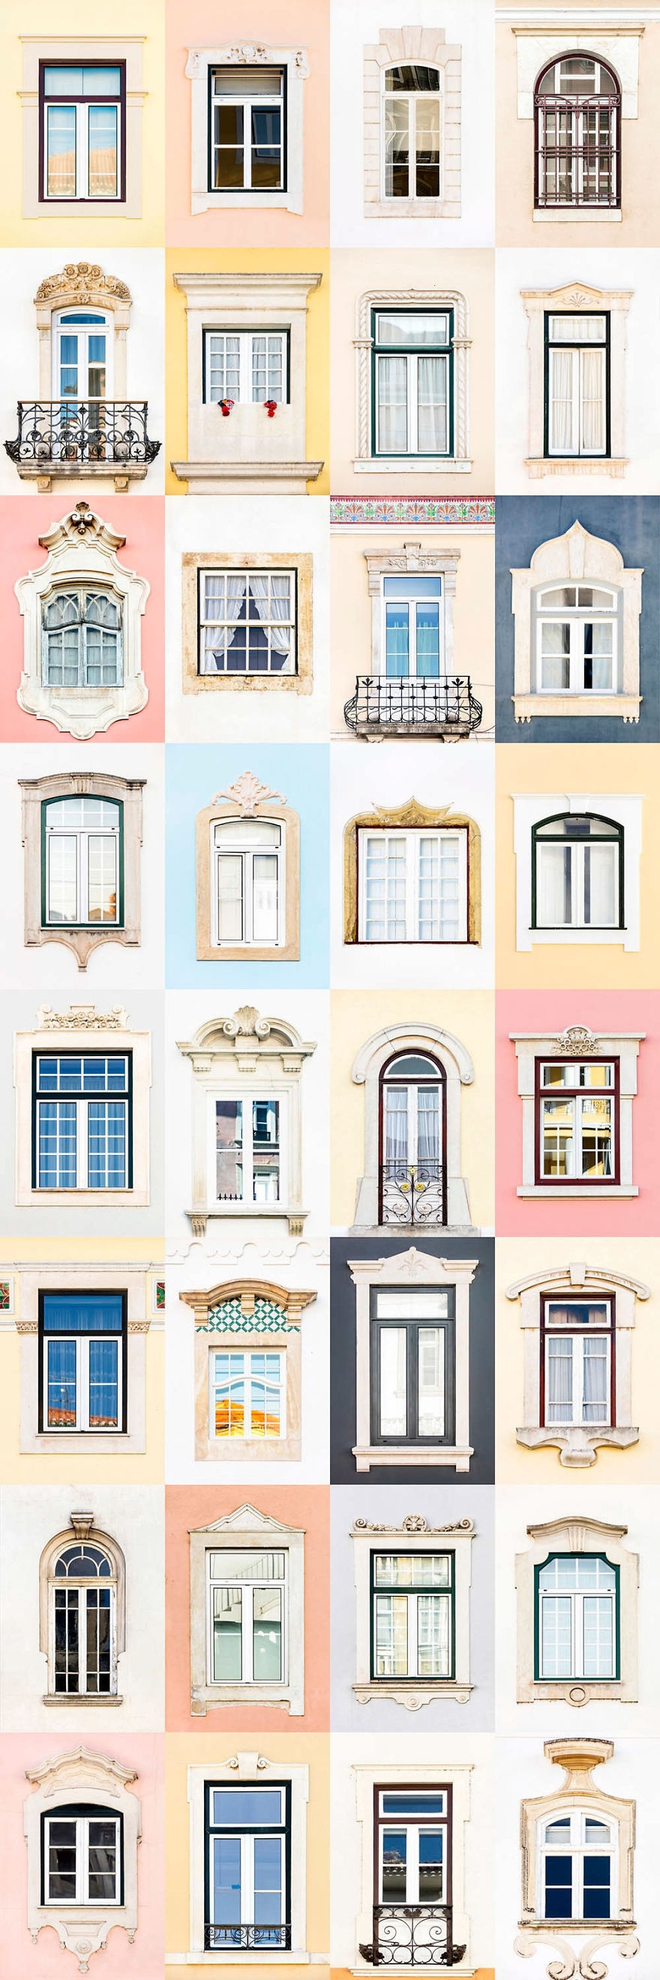 Mãn nhãn với 14 phong cách thiết kế cửa sổ khác nhau ở Bồ Đào Nha - Ảnh 13.